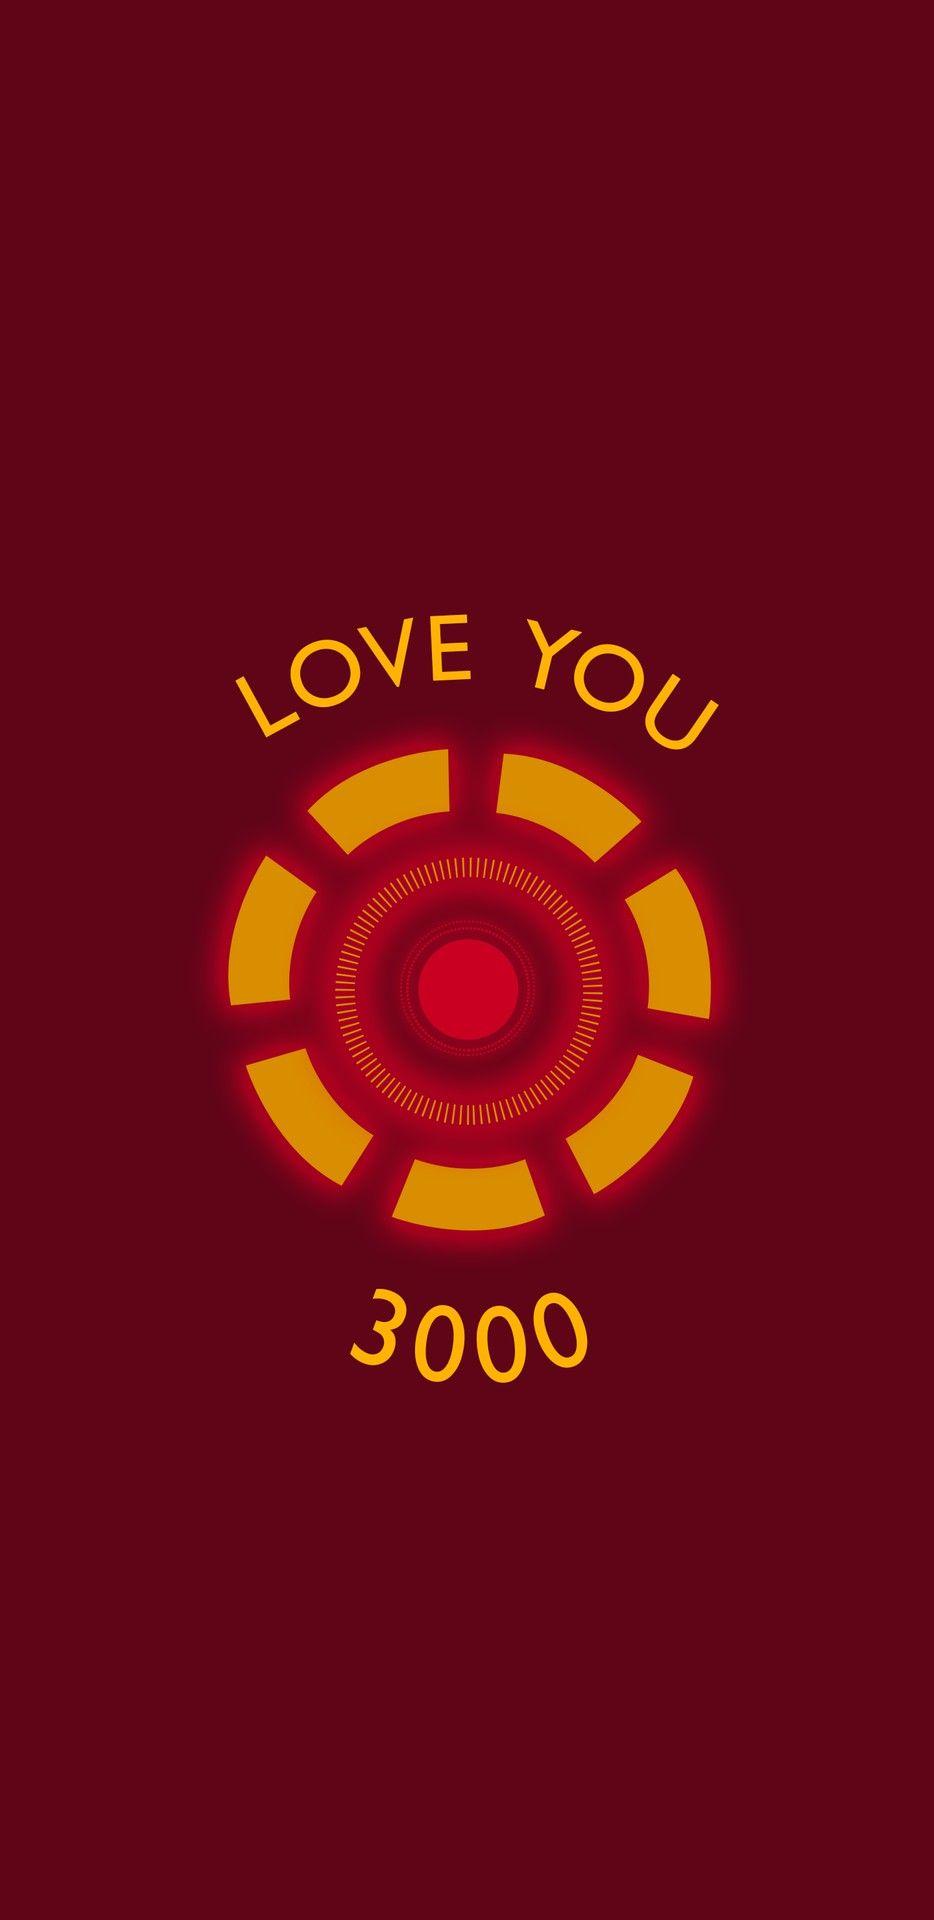 Avengers: Endgame. Tony Stark. Iron Man. Love You 3000. Marvel